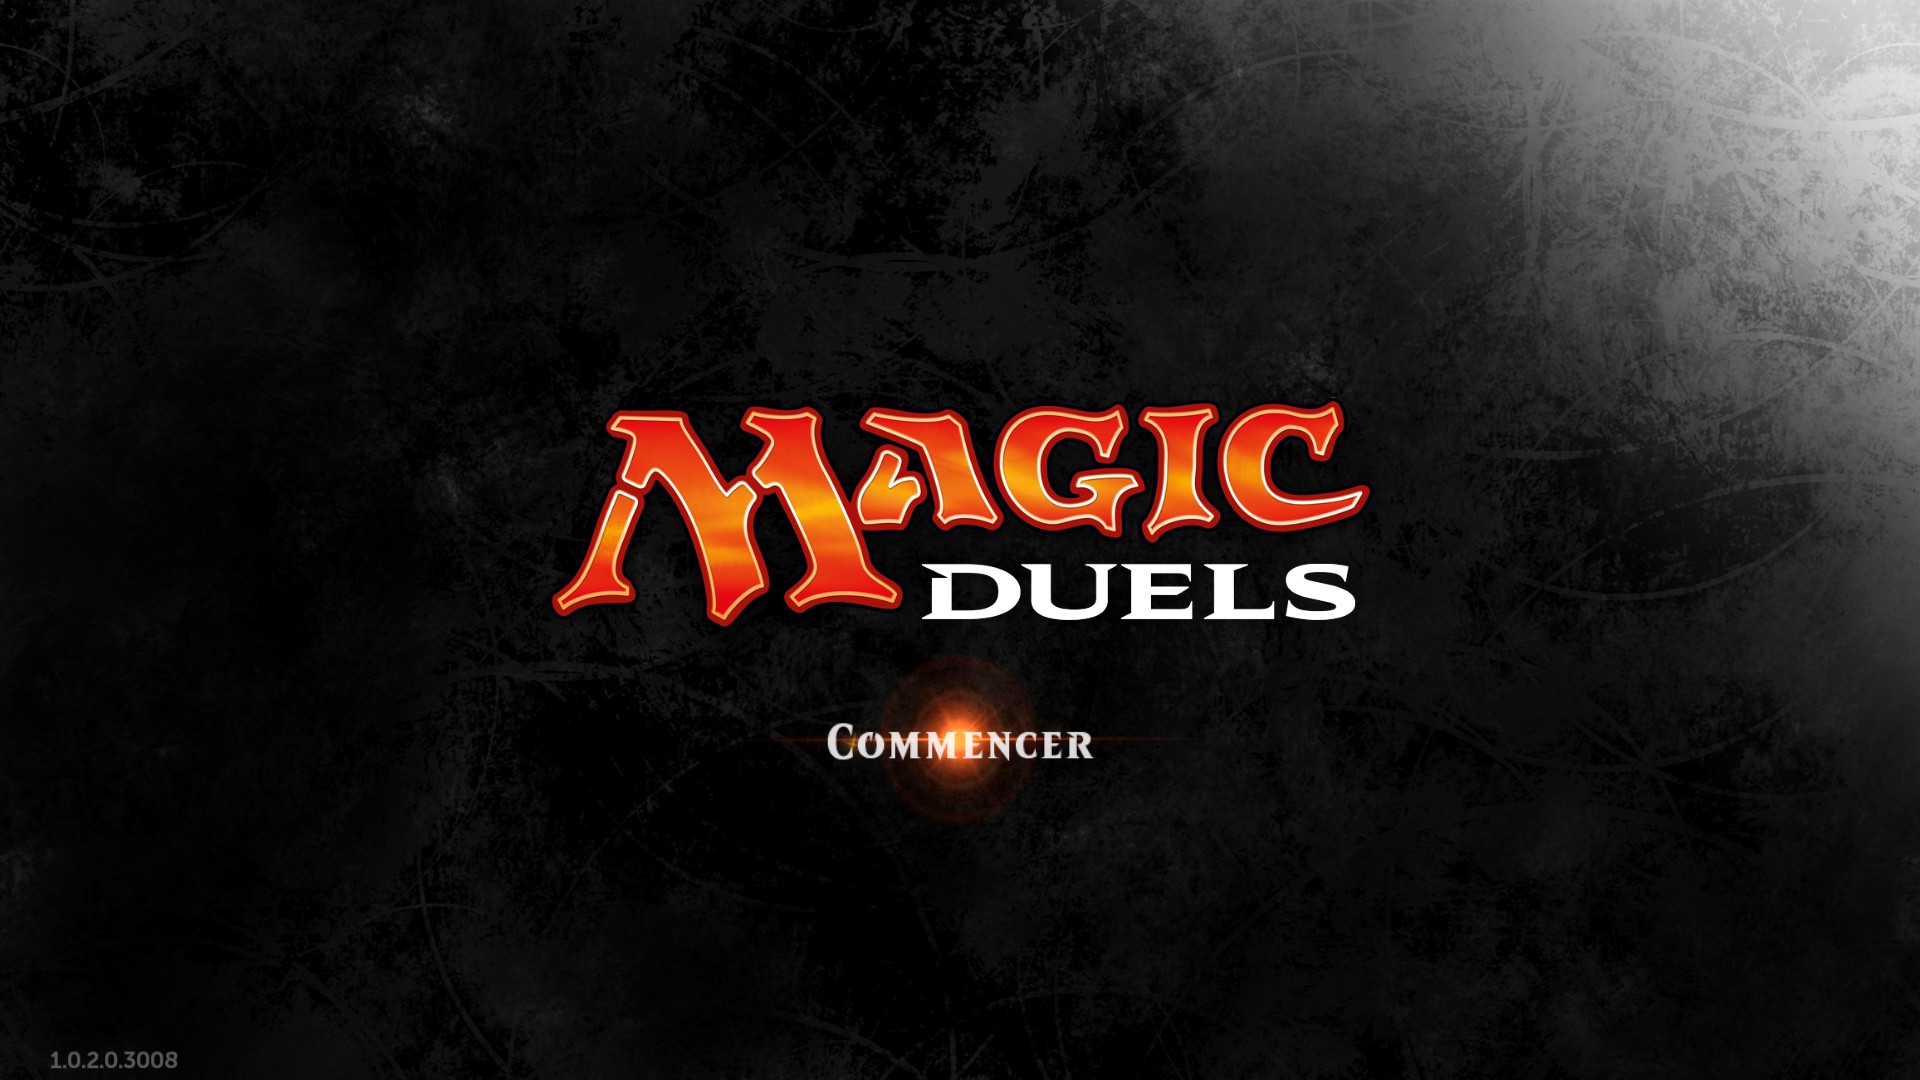 Magic Duel Origins. Magic Duels Origins 1. Magic Duels Gameplay.